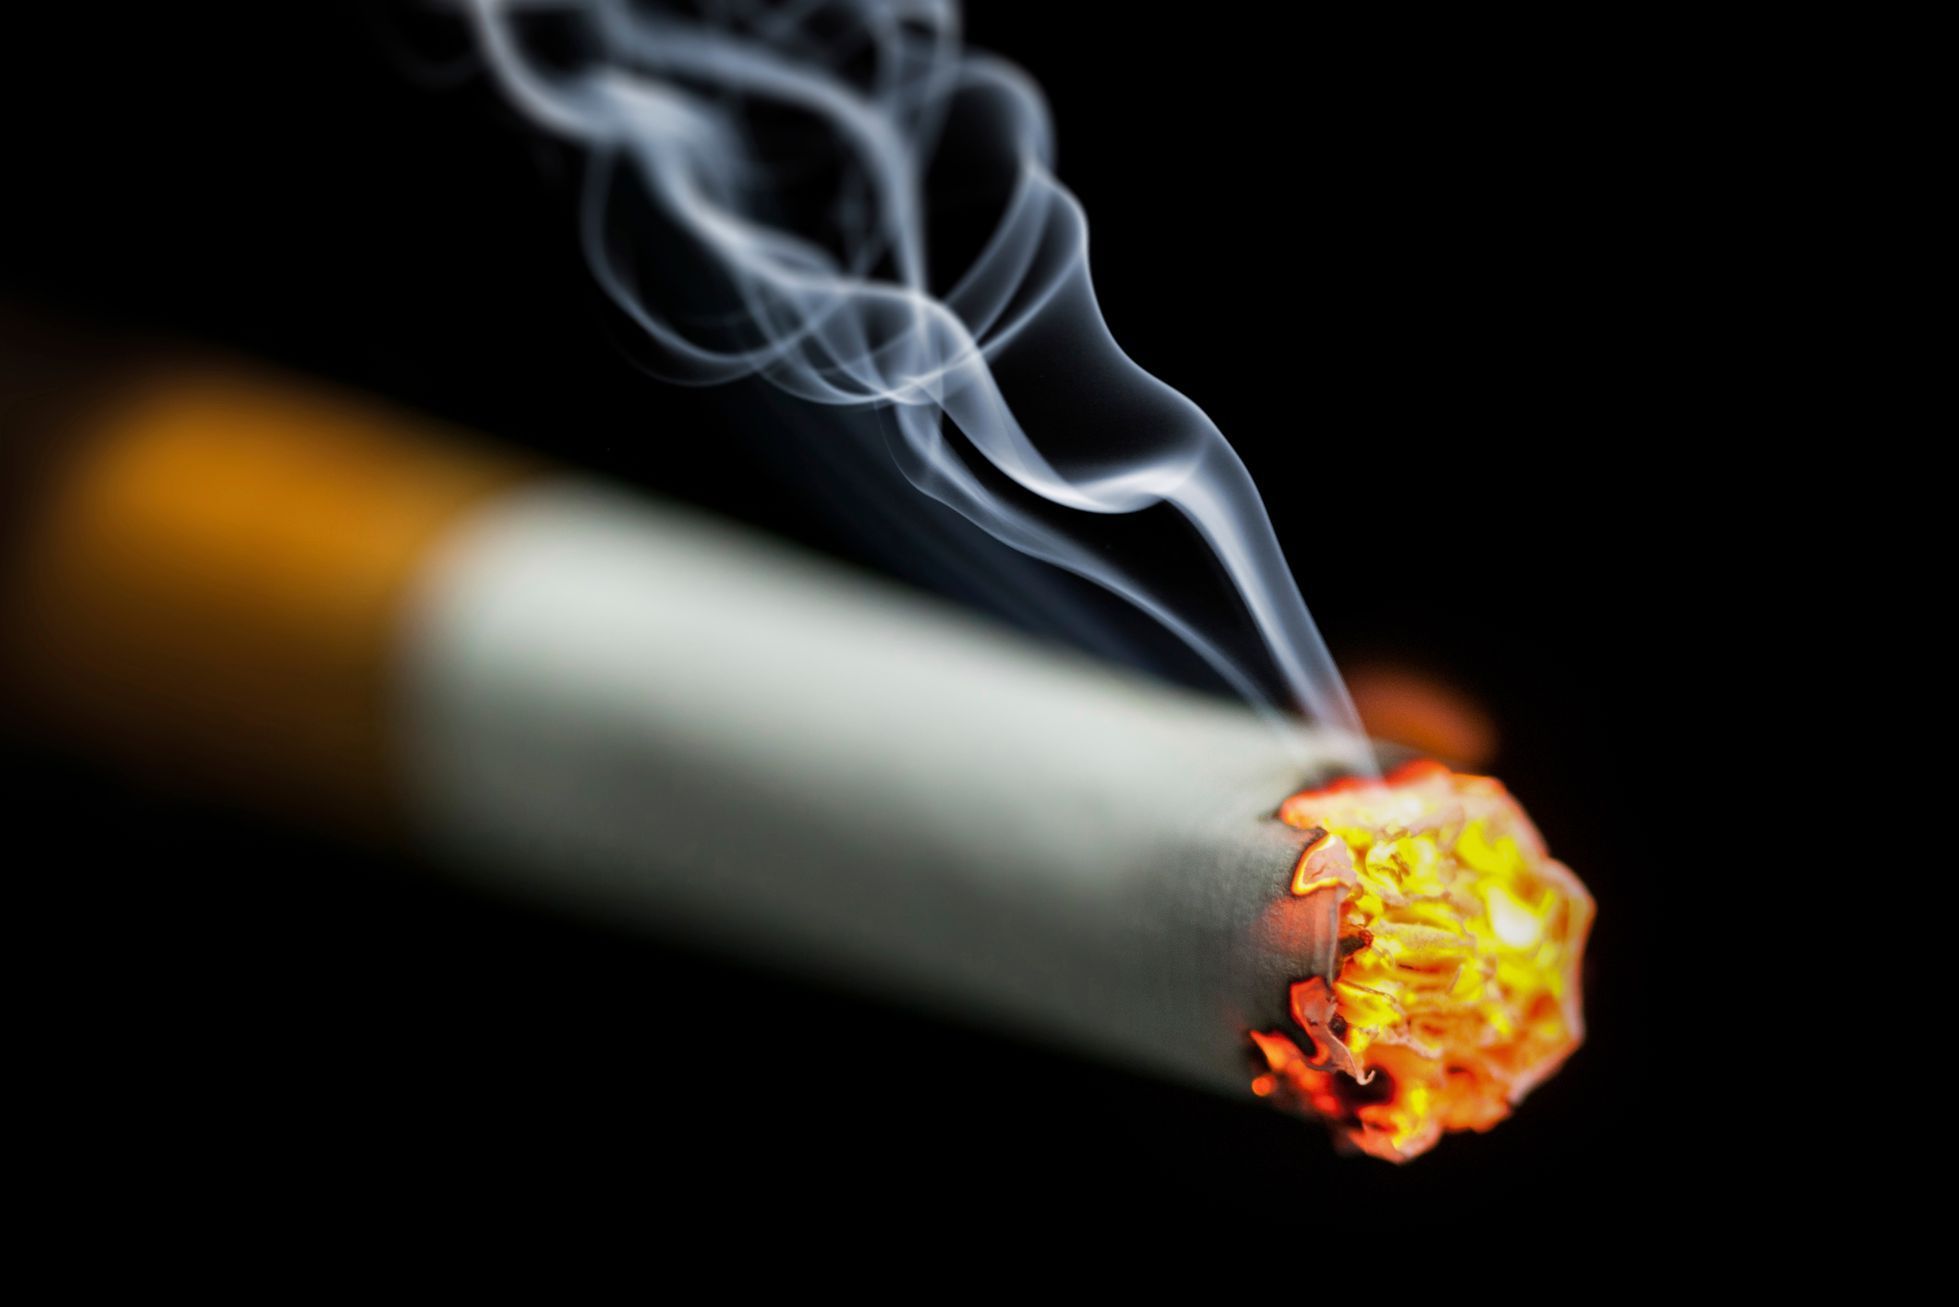 Cigarety, ilustrační foto